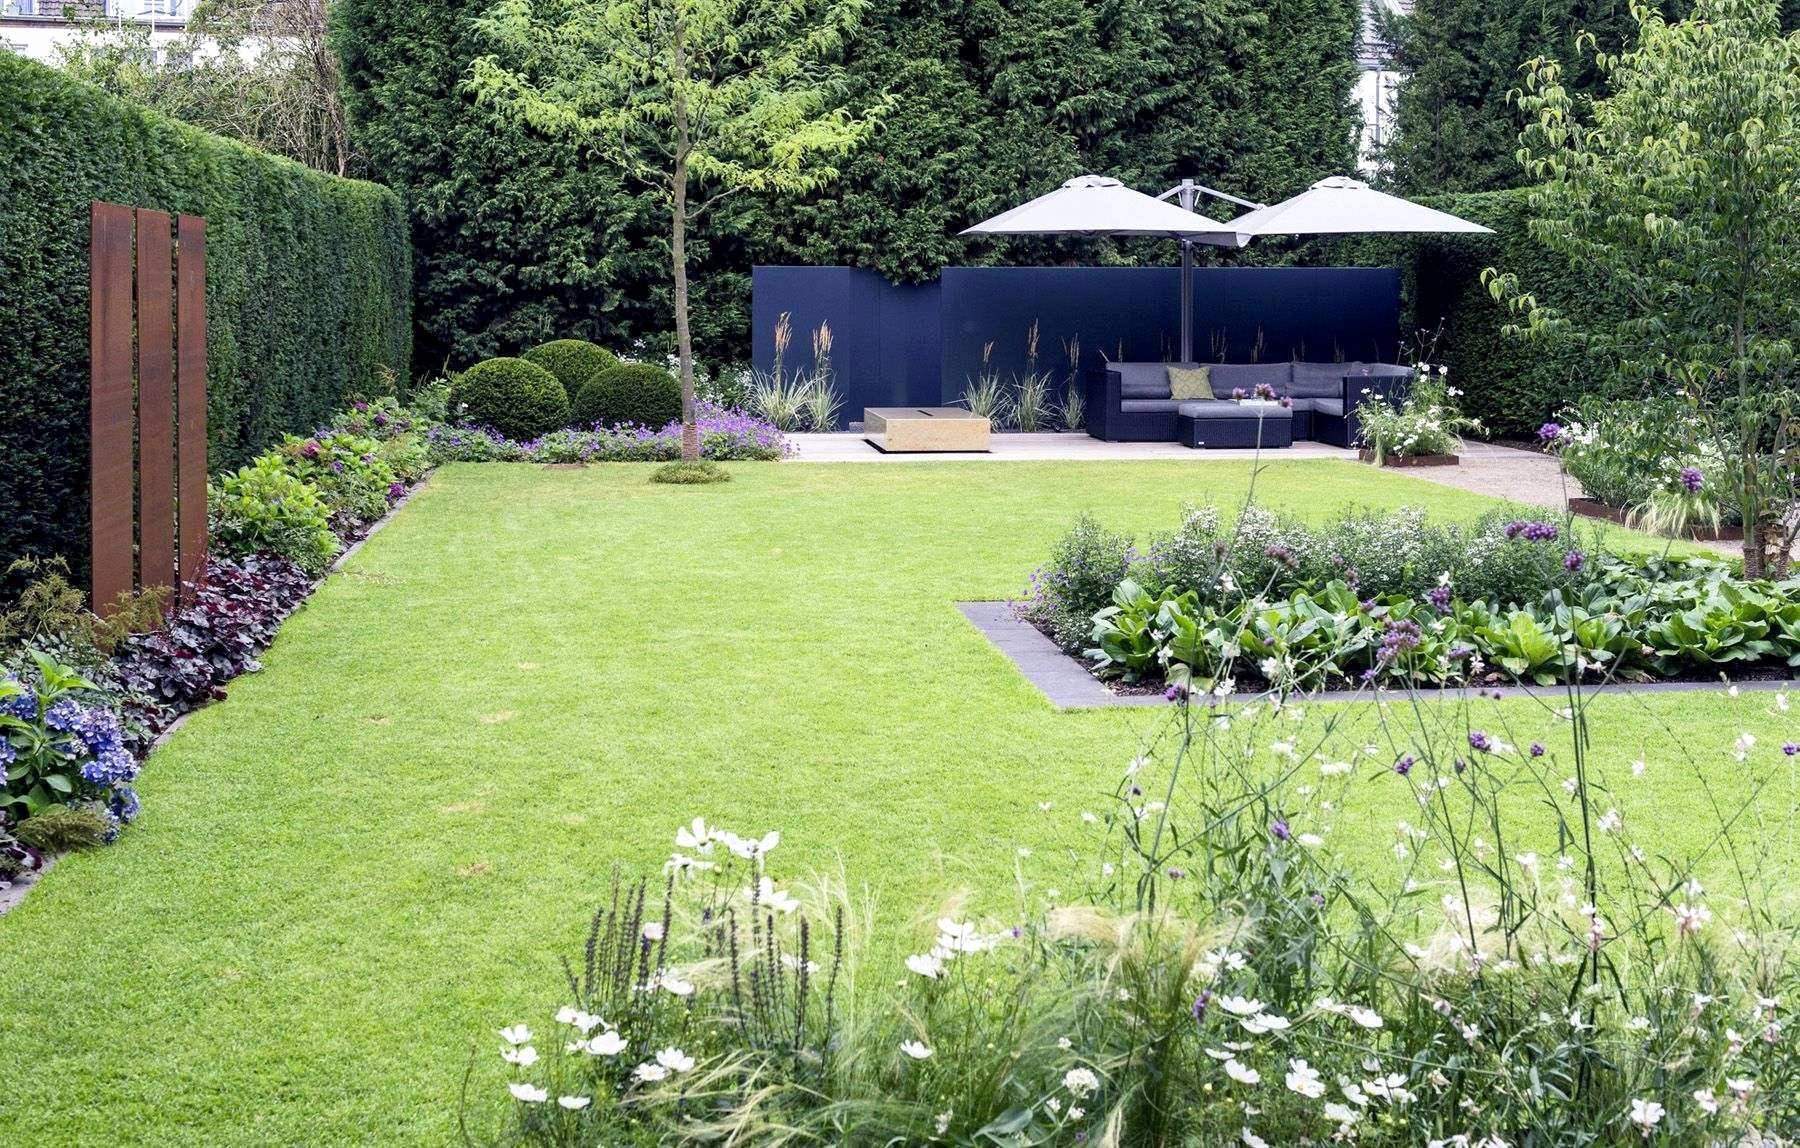 Ideen Kleiner Garten Inspirierend 28 Elegant Gartengestaltung Kleiner Garten Neu